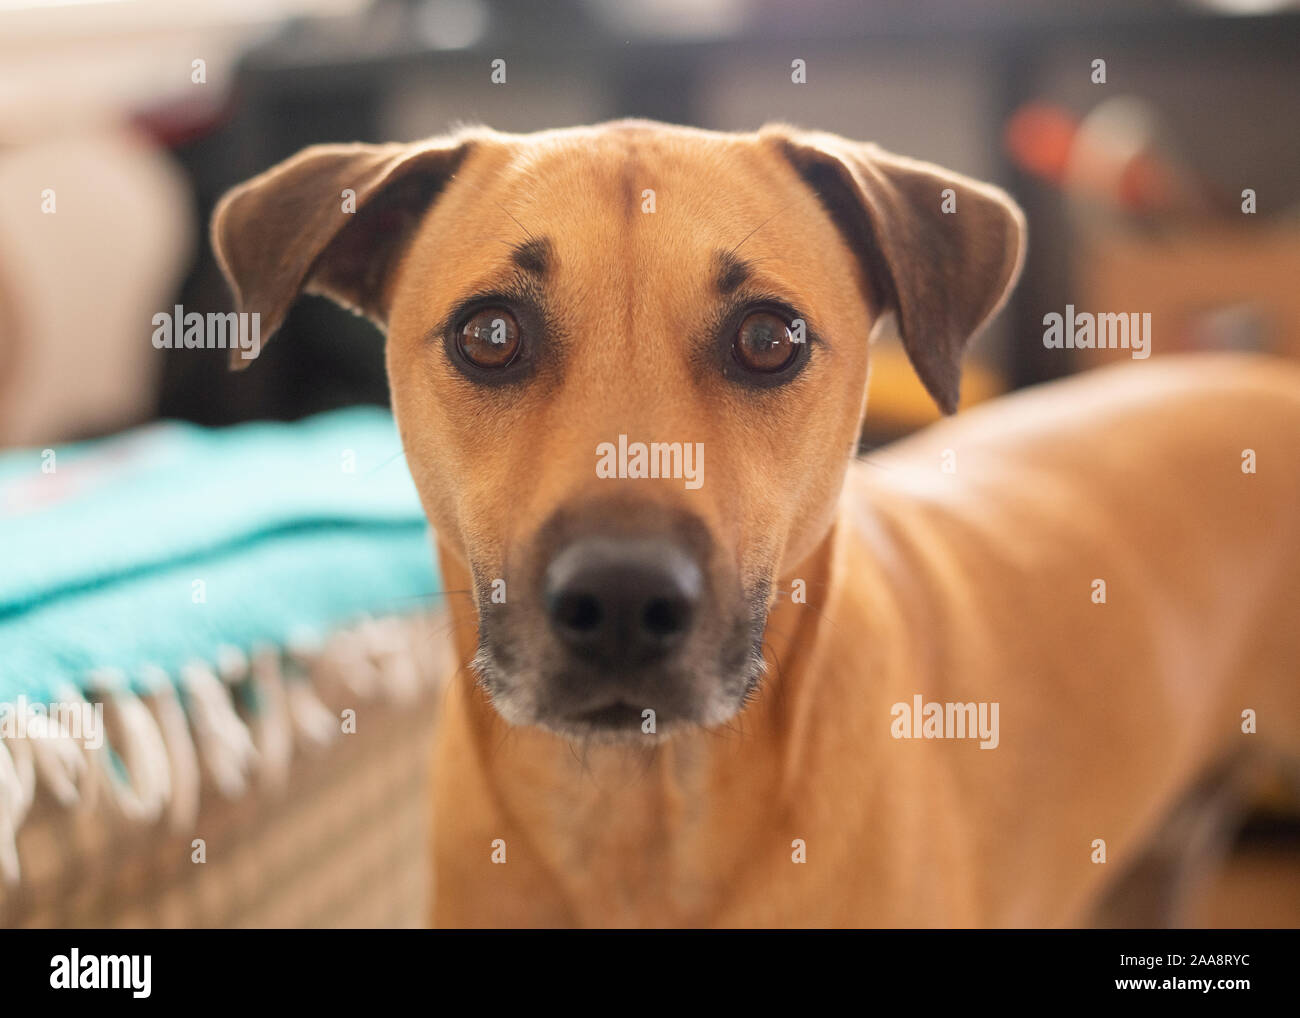 Perro marrón con orejas y grandes ojos marrón perro mirando a la cámara Foto de stock